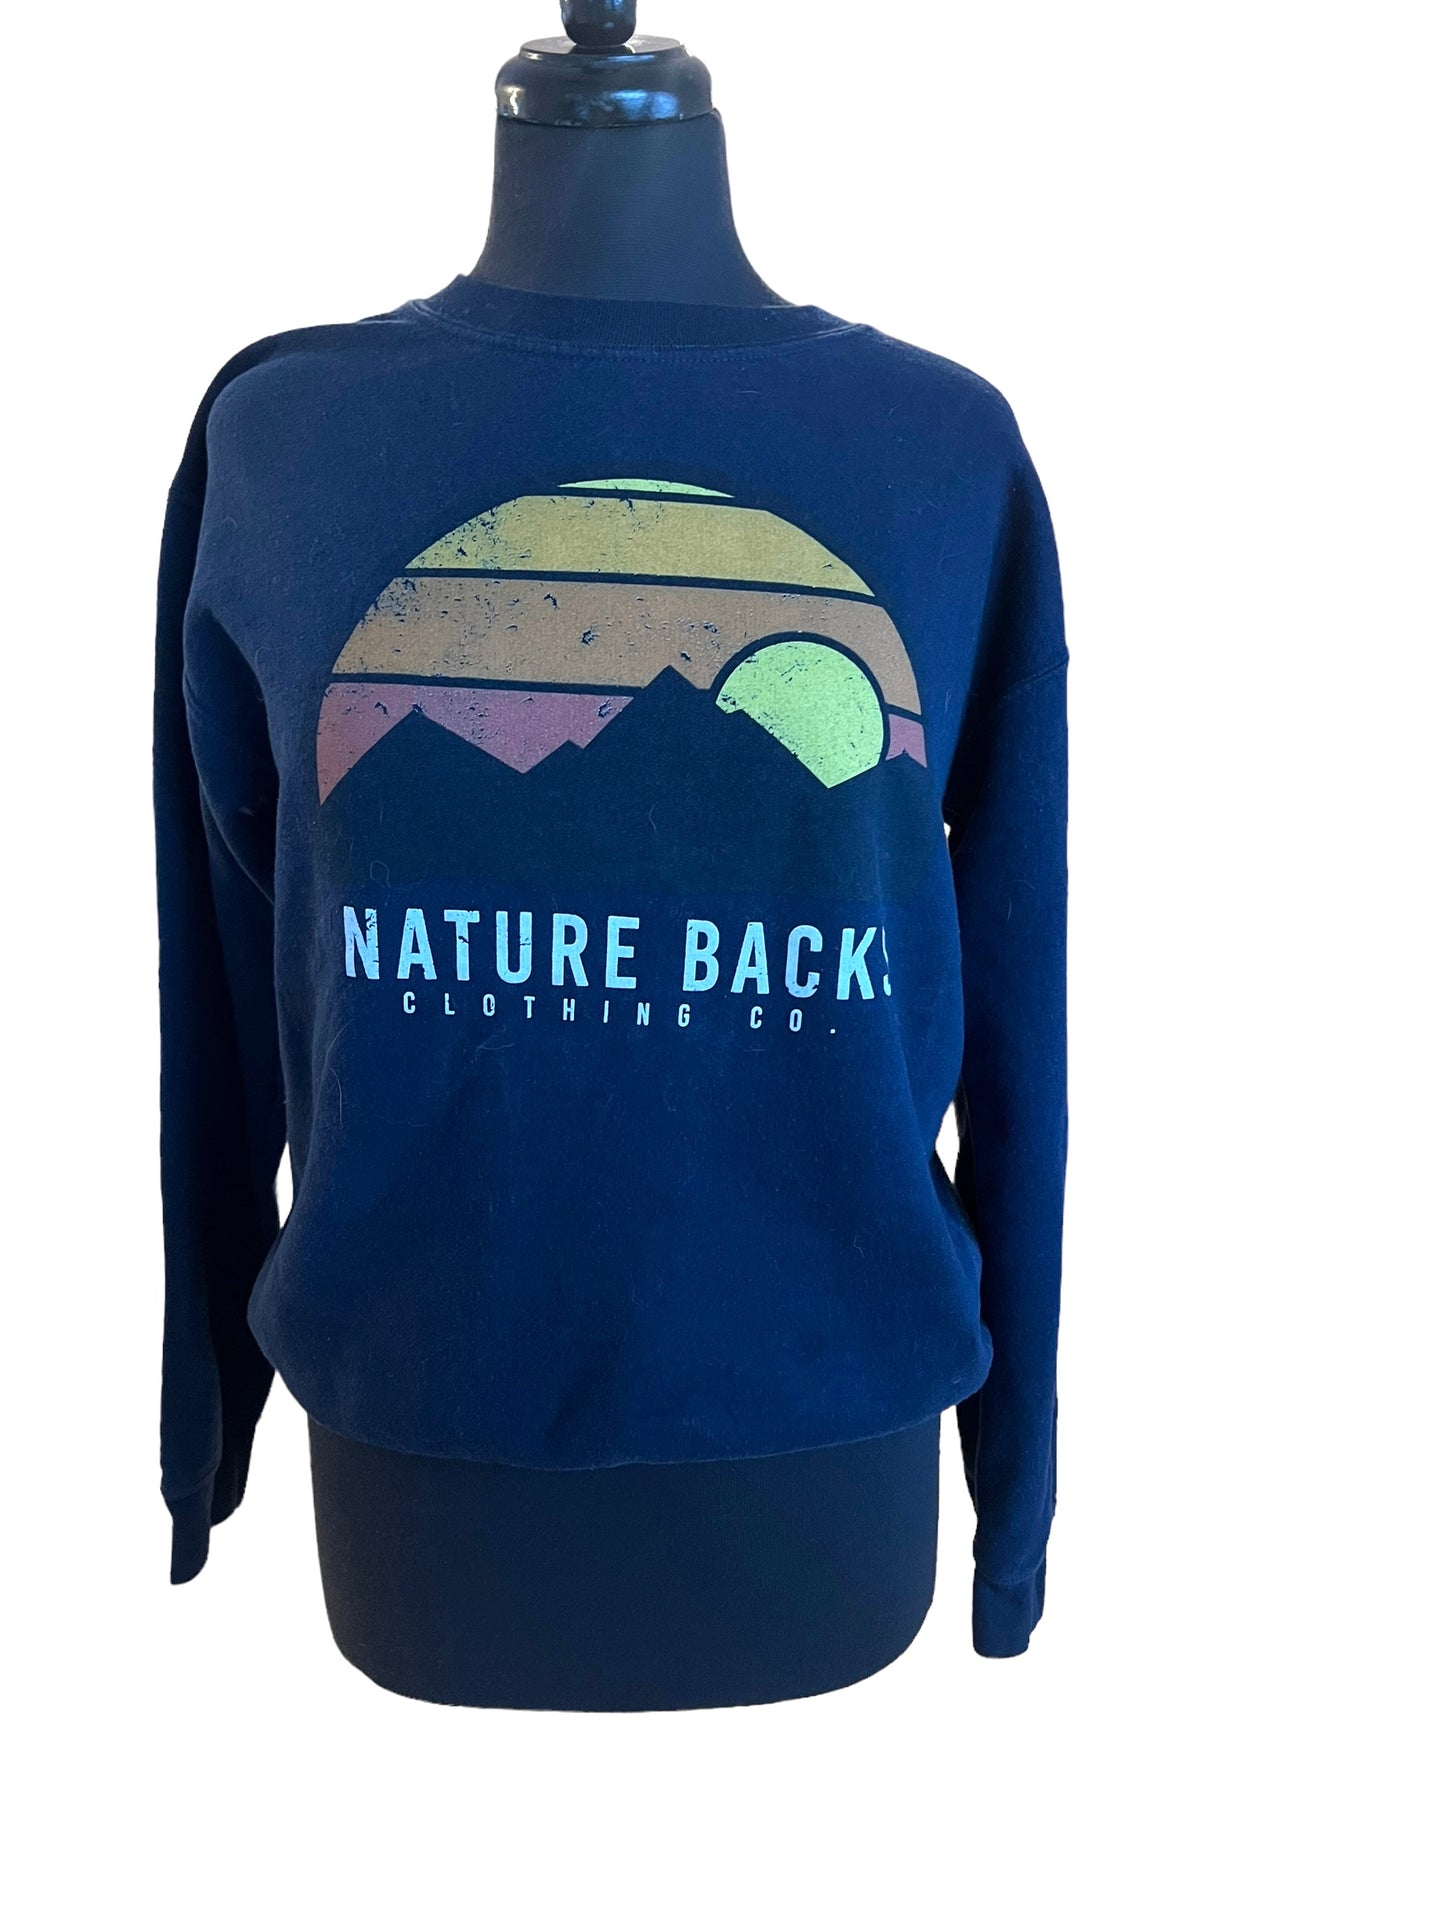 Nature Backs Clothing Co Sweater